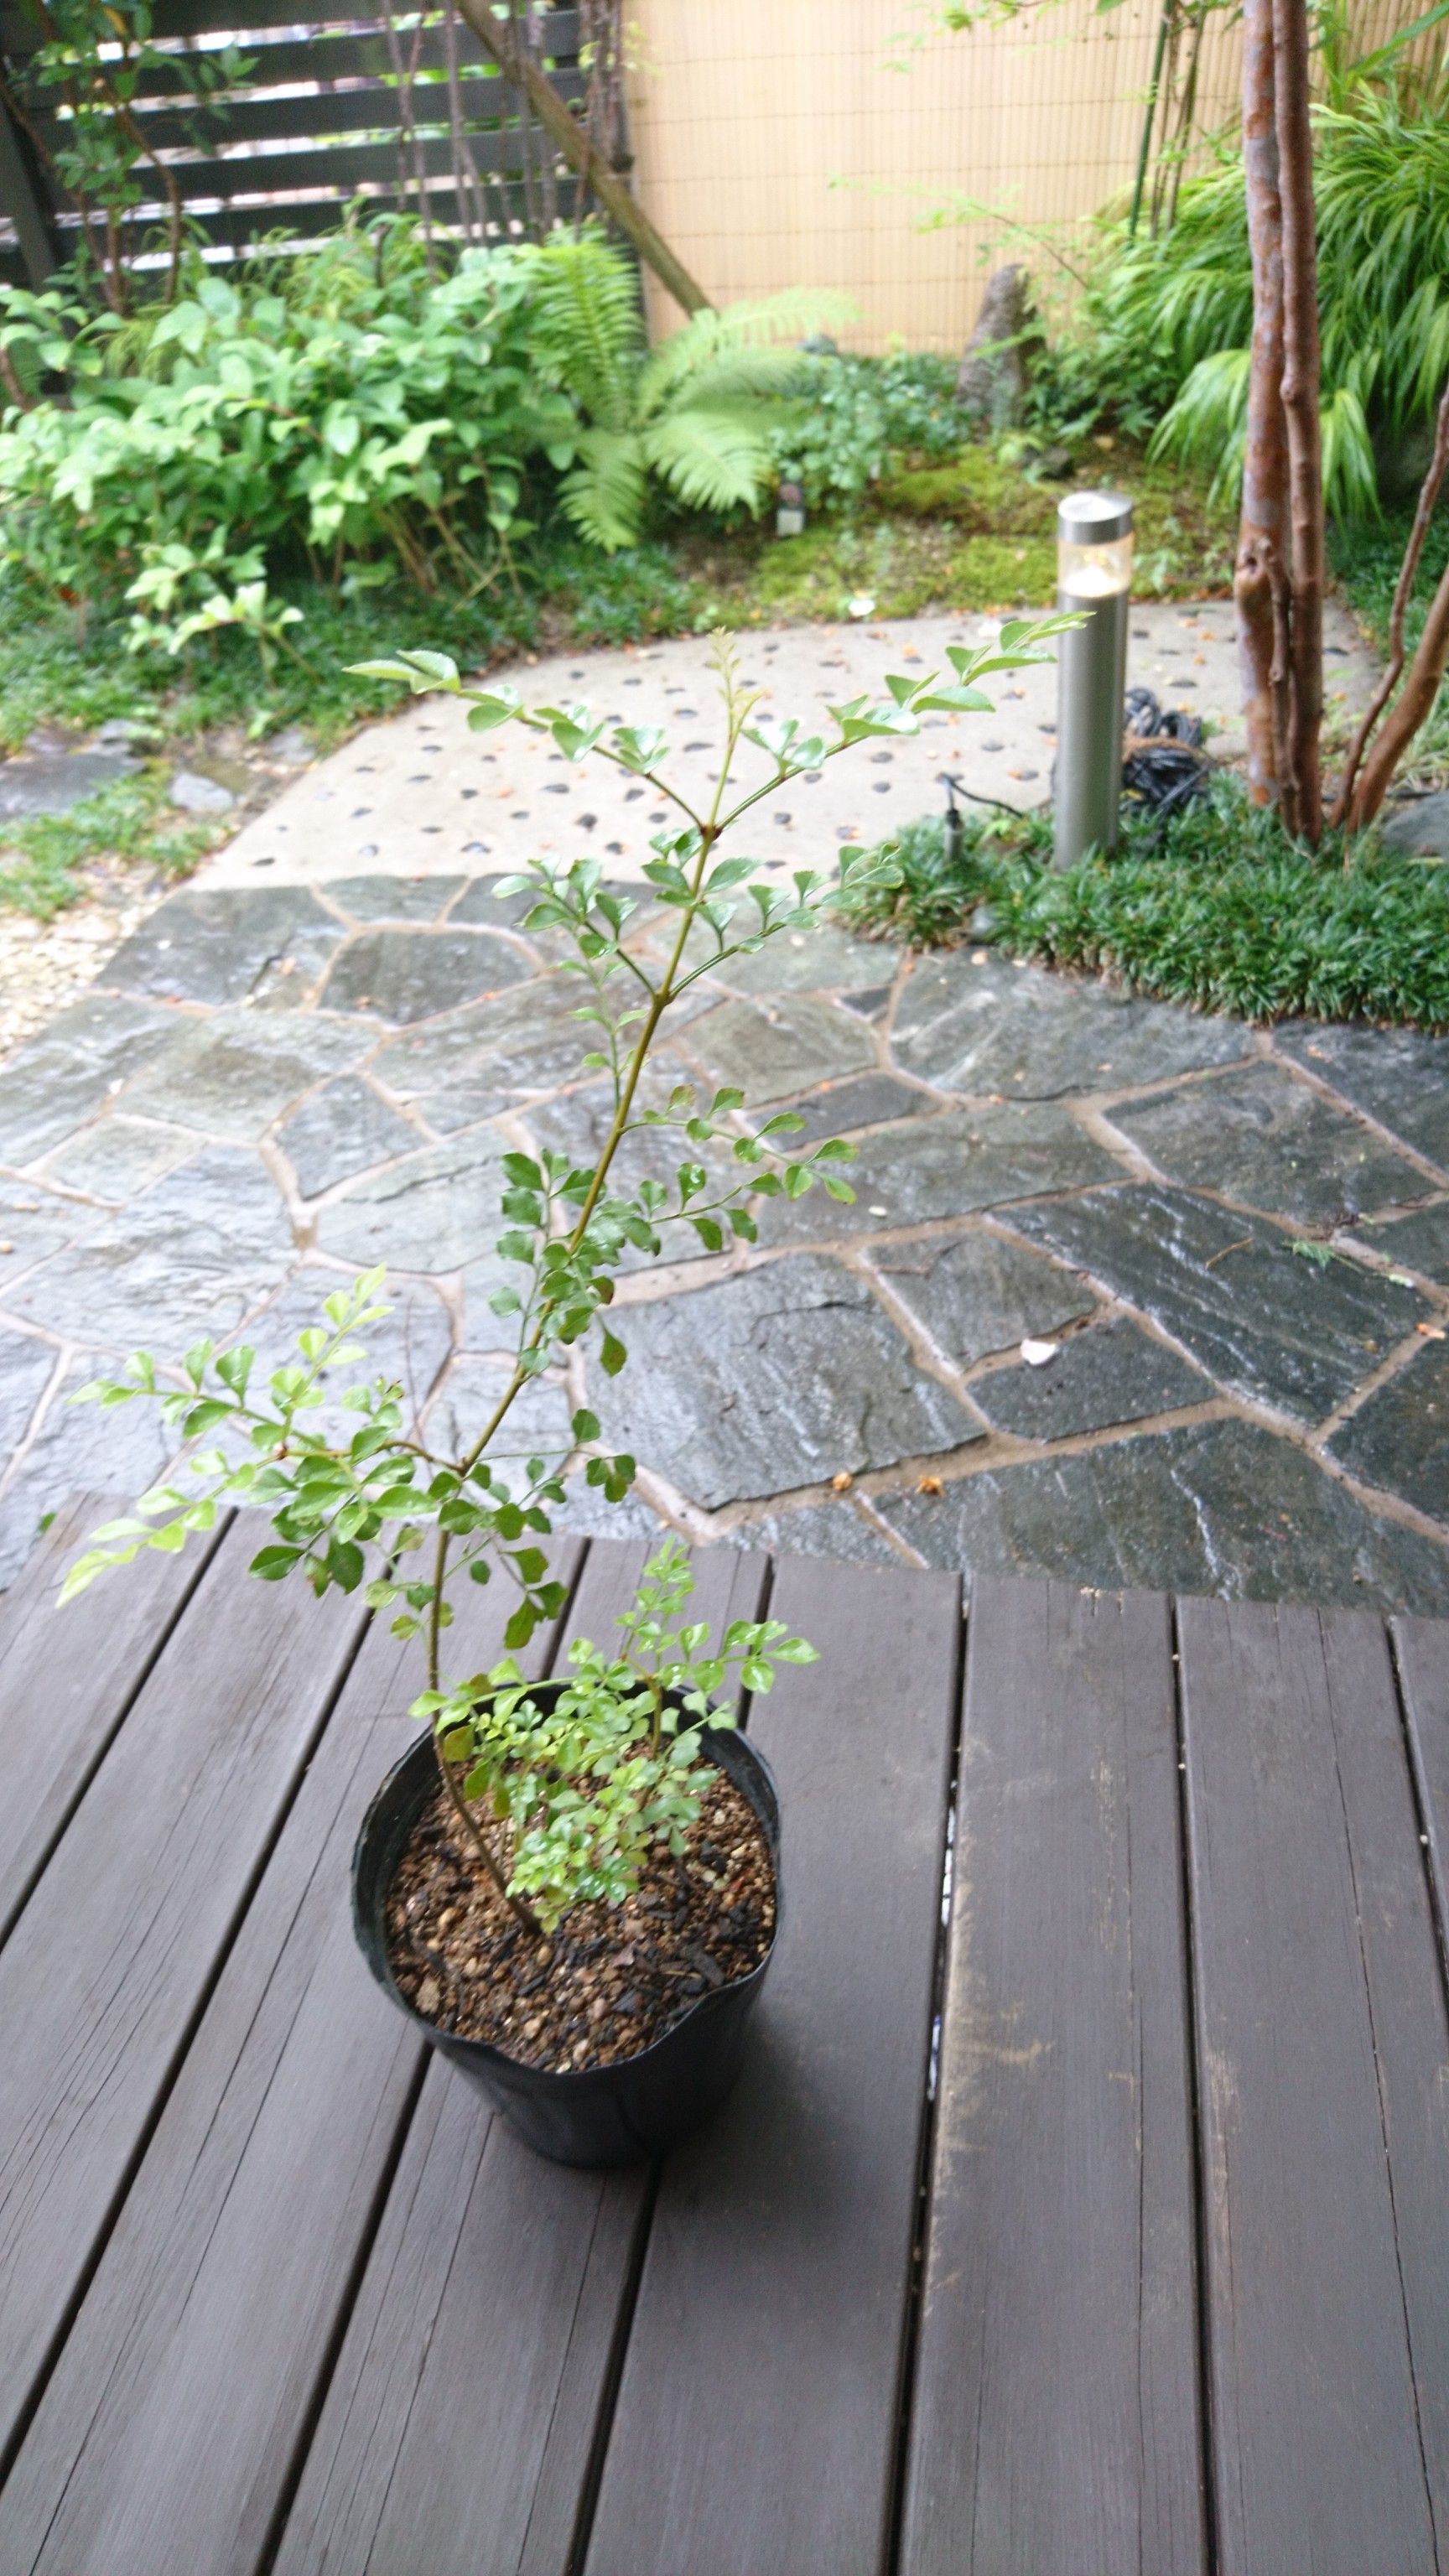 シマトネリコ 苗木 約36 45cm シンボルツリーとして人気の樹種です Iichi ハンドメイド クラフト作品 手仕事品の通販